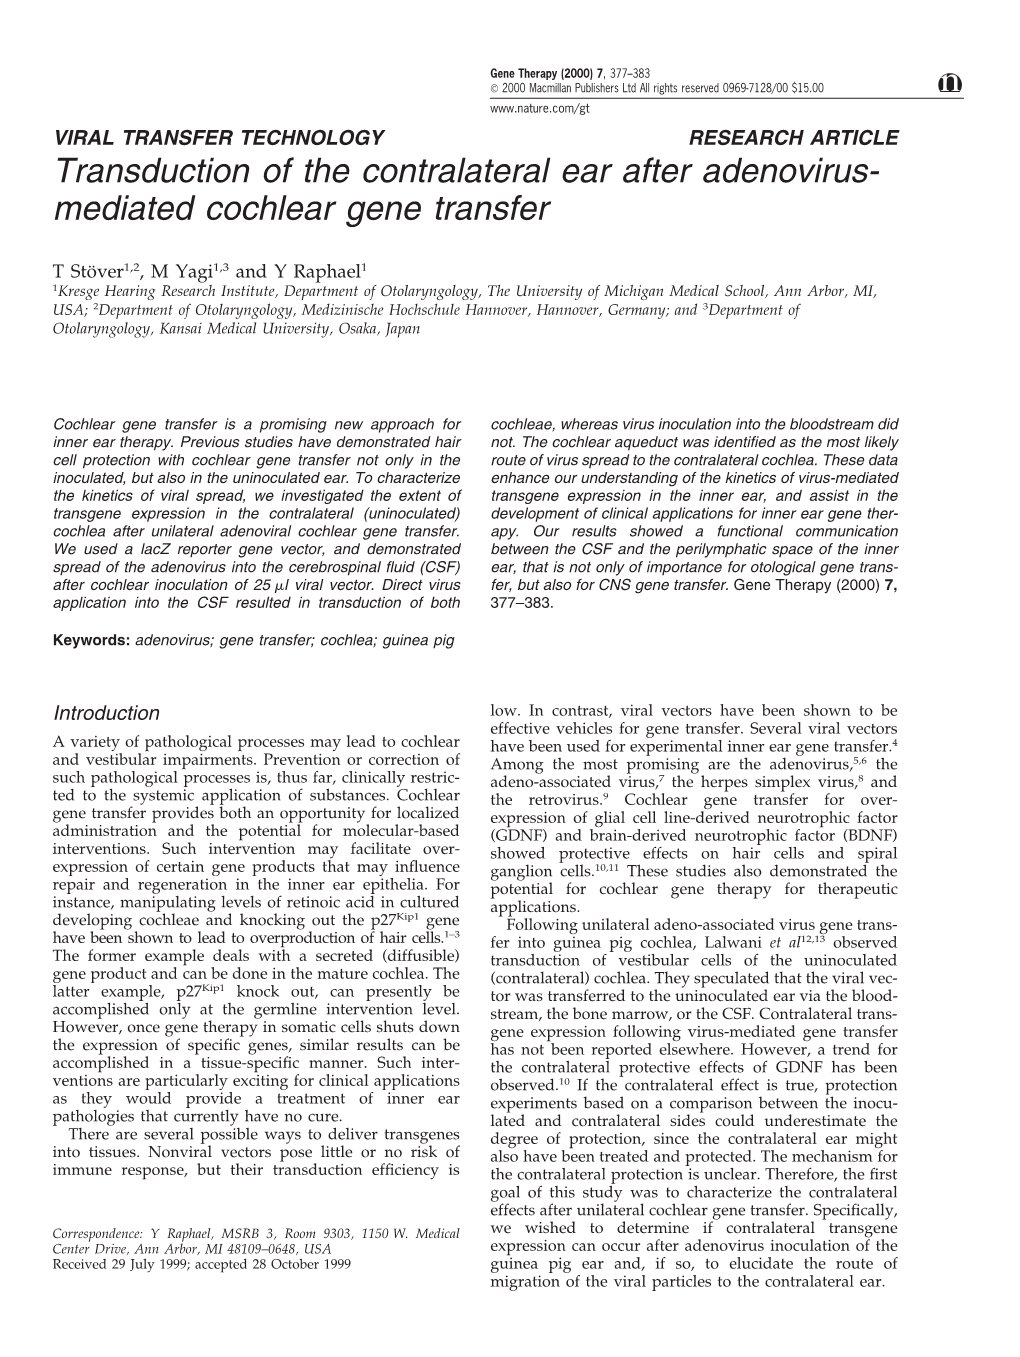 Mediated Cochlear Gene Transfer